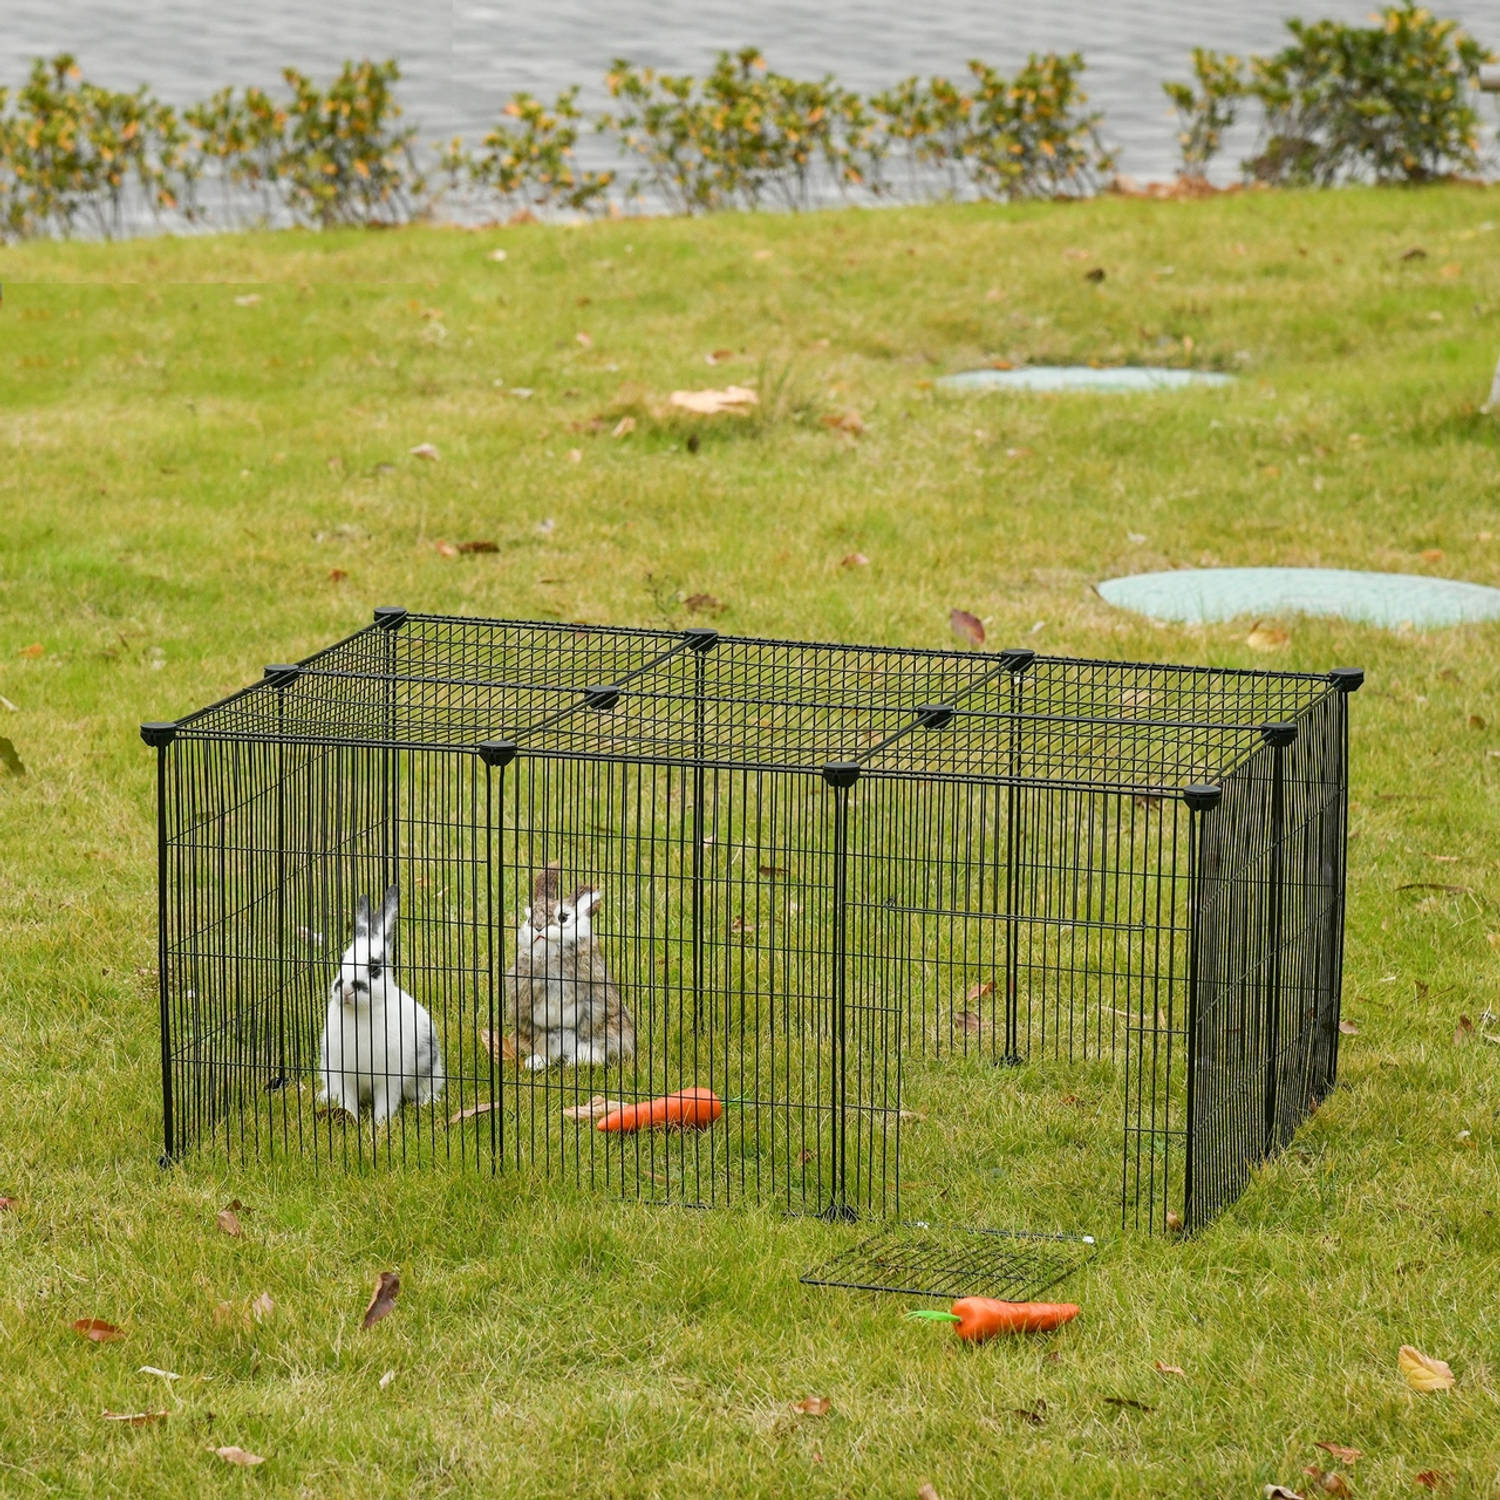 Ren voor kleine huisdieren Konijnenren - Cavia ren - Dierenverblijf - Zwart - 105L x 70B x 45H cm | Blokker